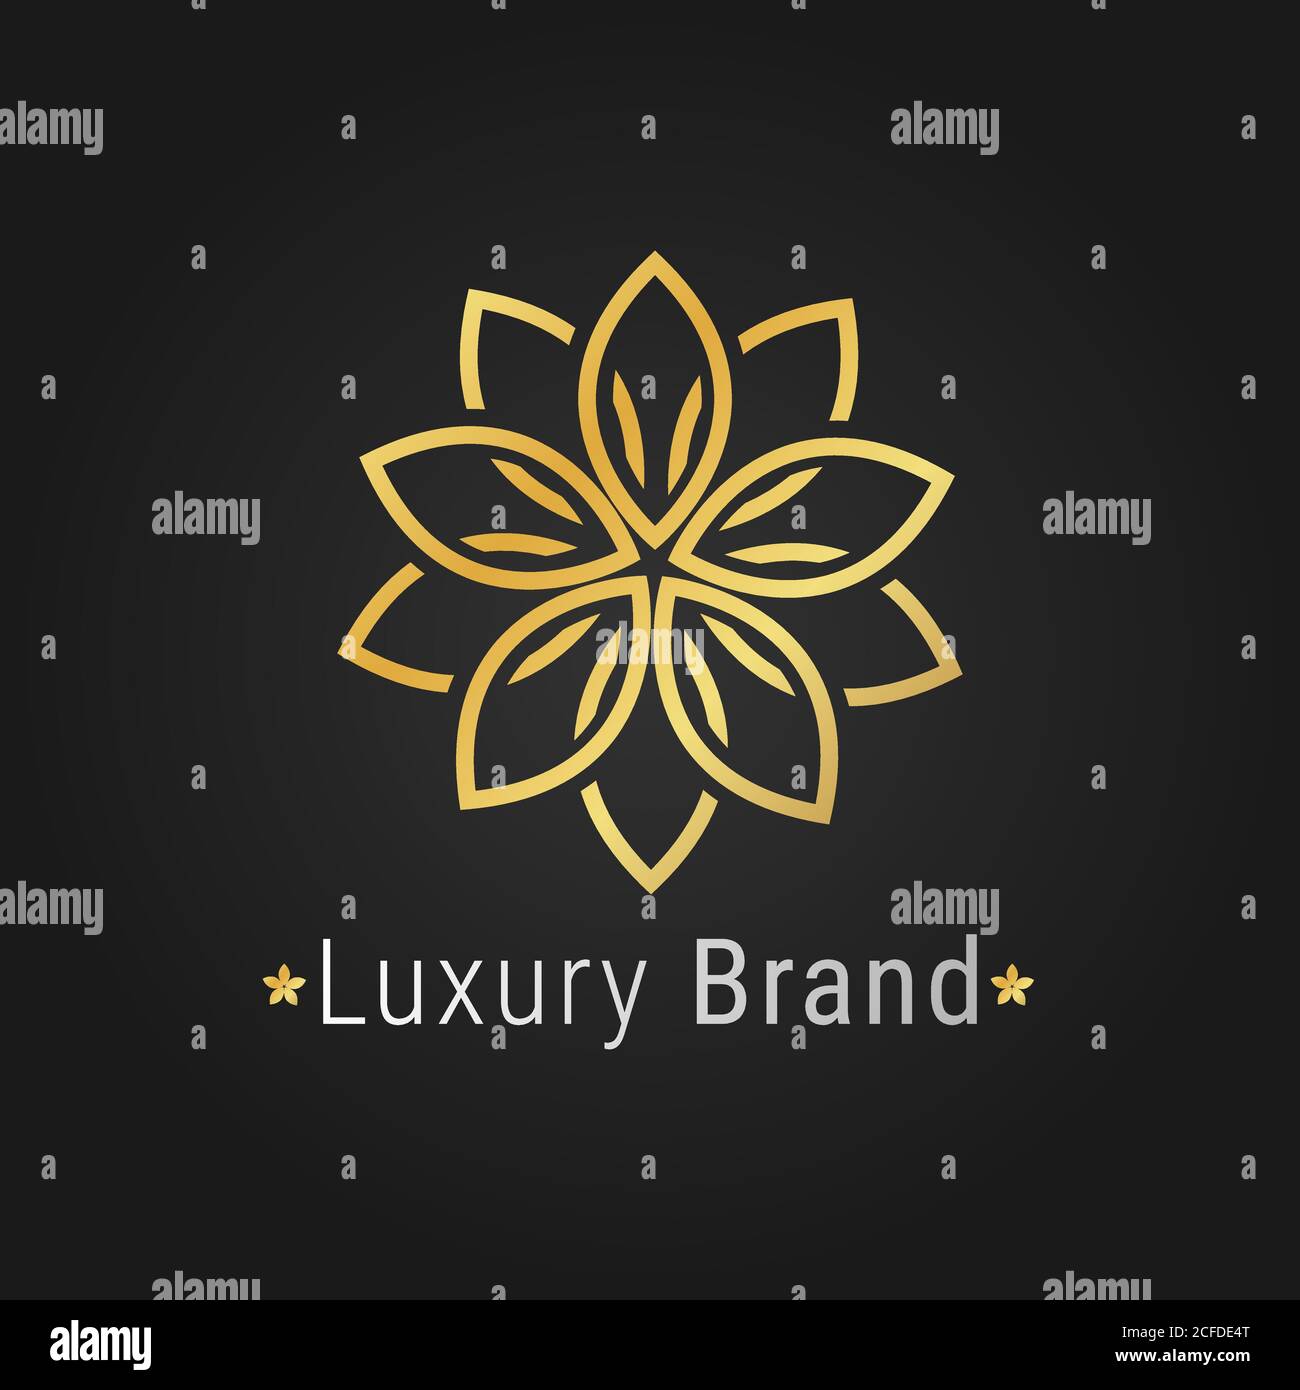 Flower logo luxury golden elegant branding on black background for restaurant, spa, hotel business Stock Vector